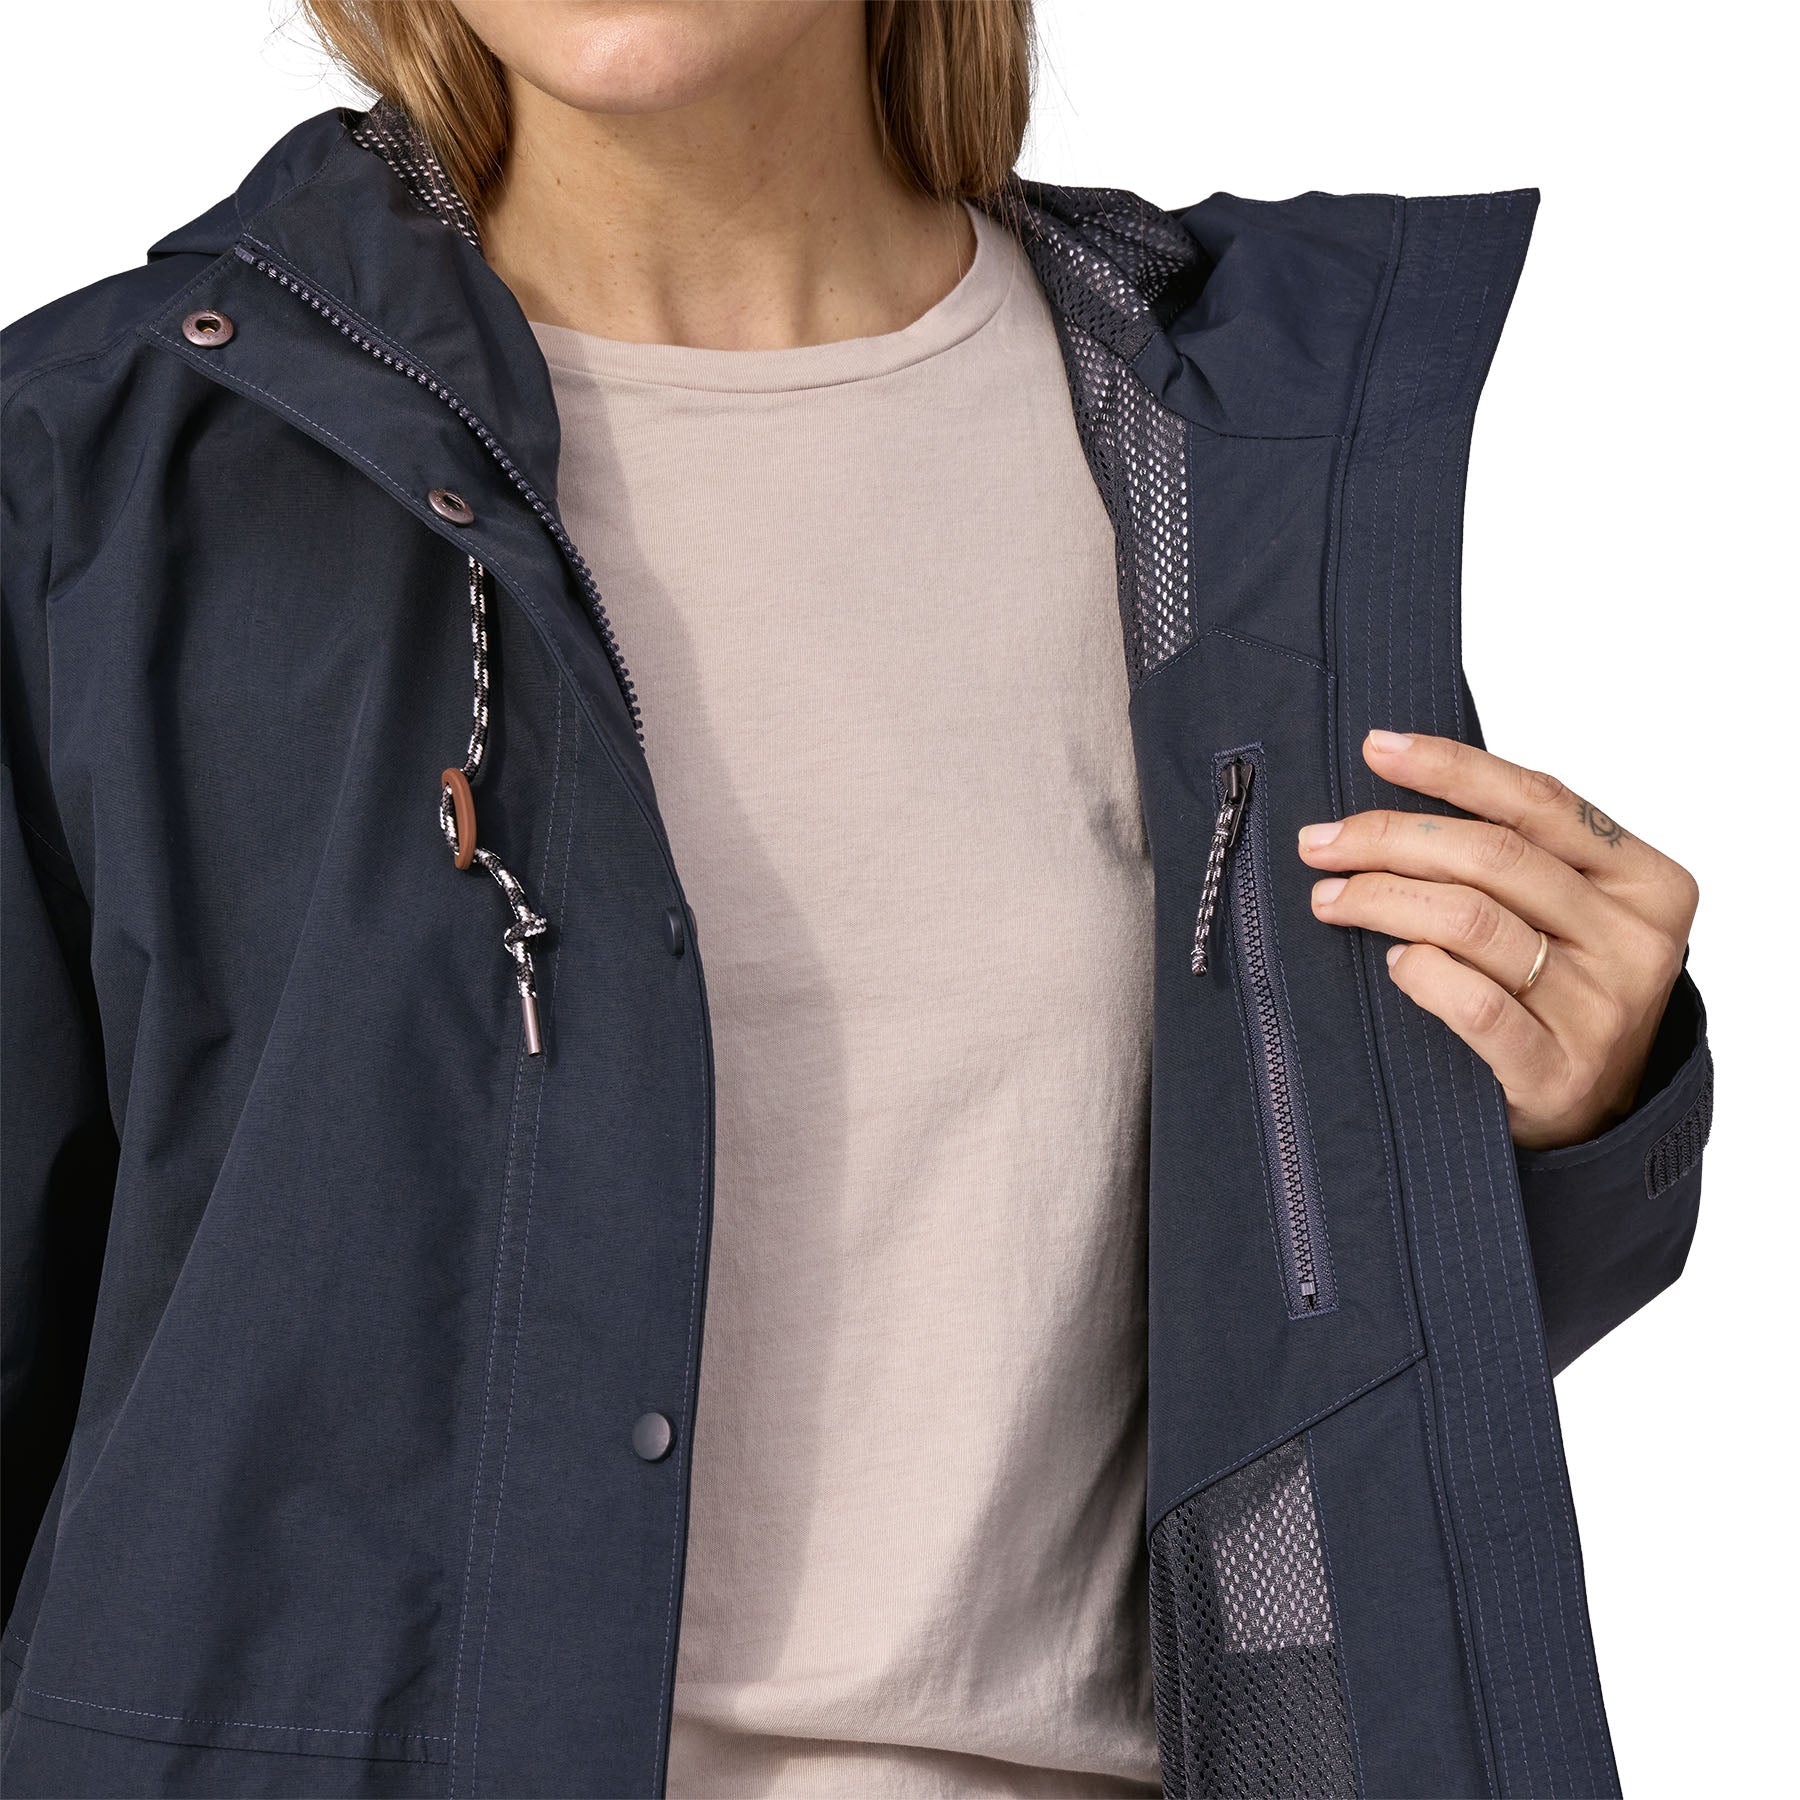 Women's Outdoor Everyday Rain Jacket